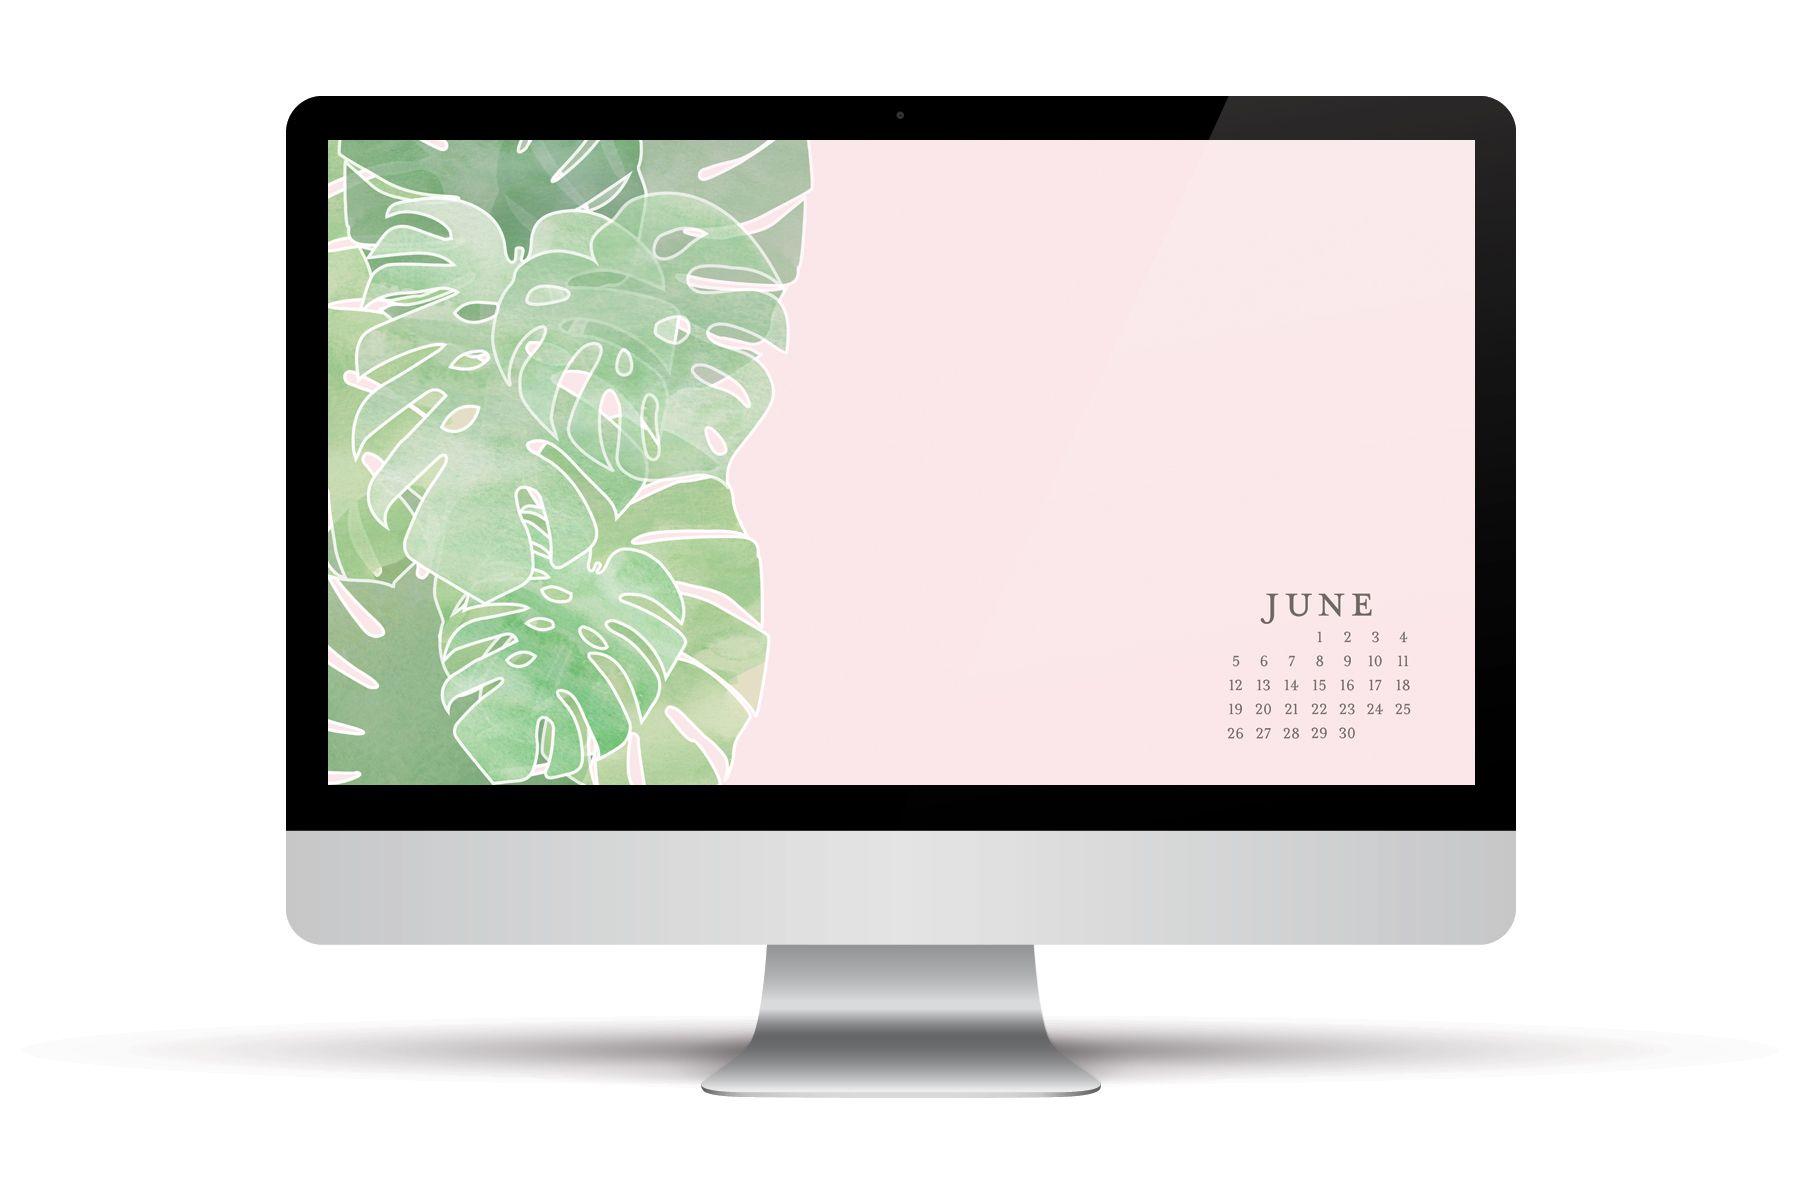 June 2016 Free Calendars and Wallpaper